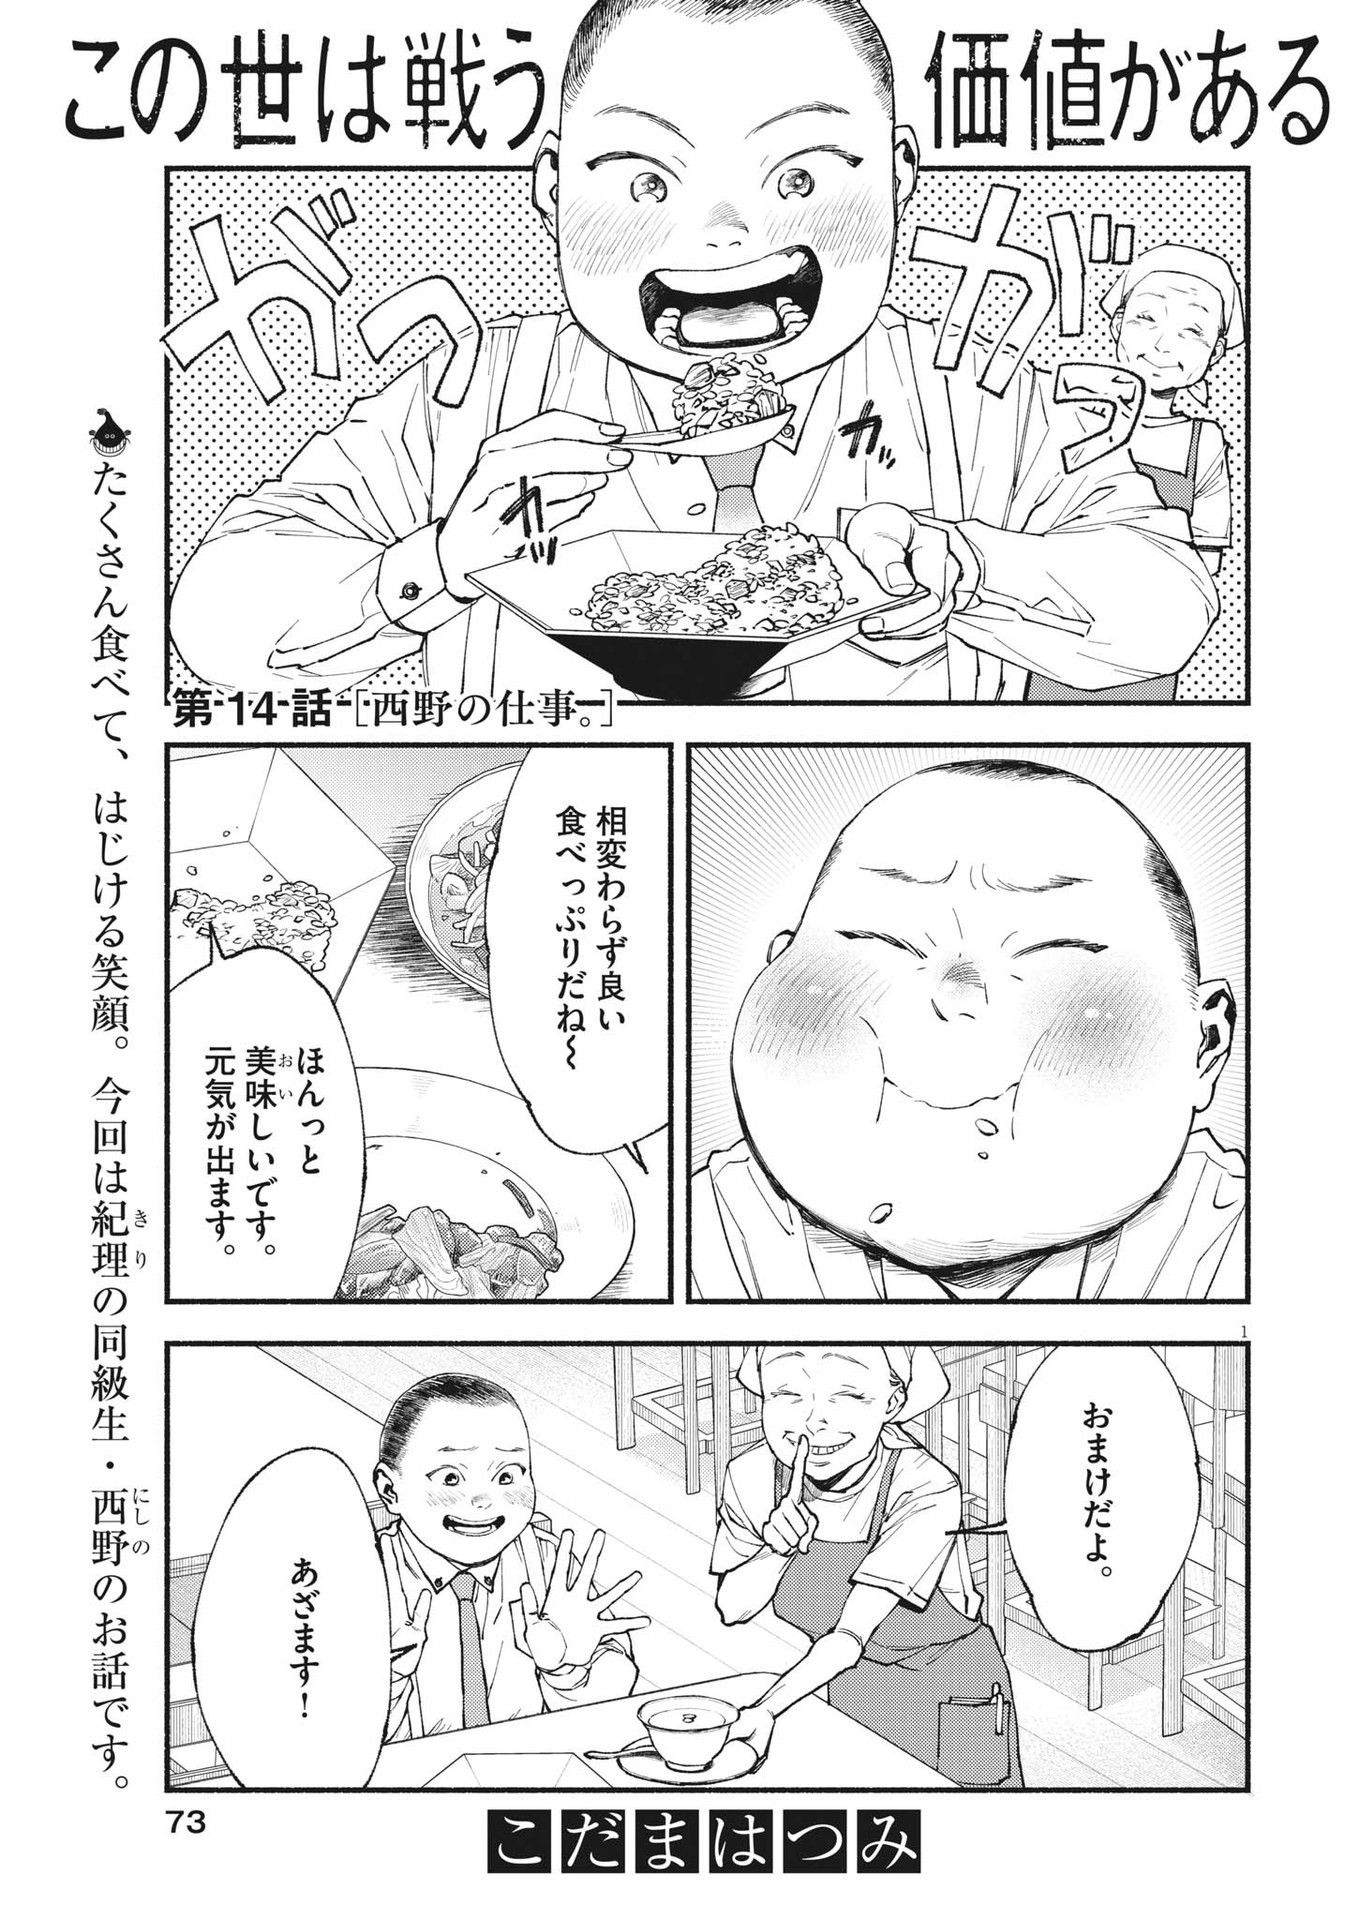 Konoyo wa Tatakau Kachi ga Aru  - Chapter 14 - Page 1